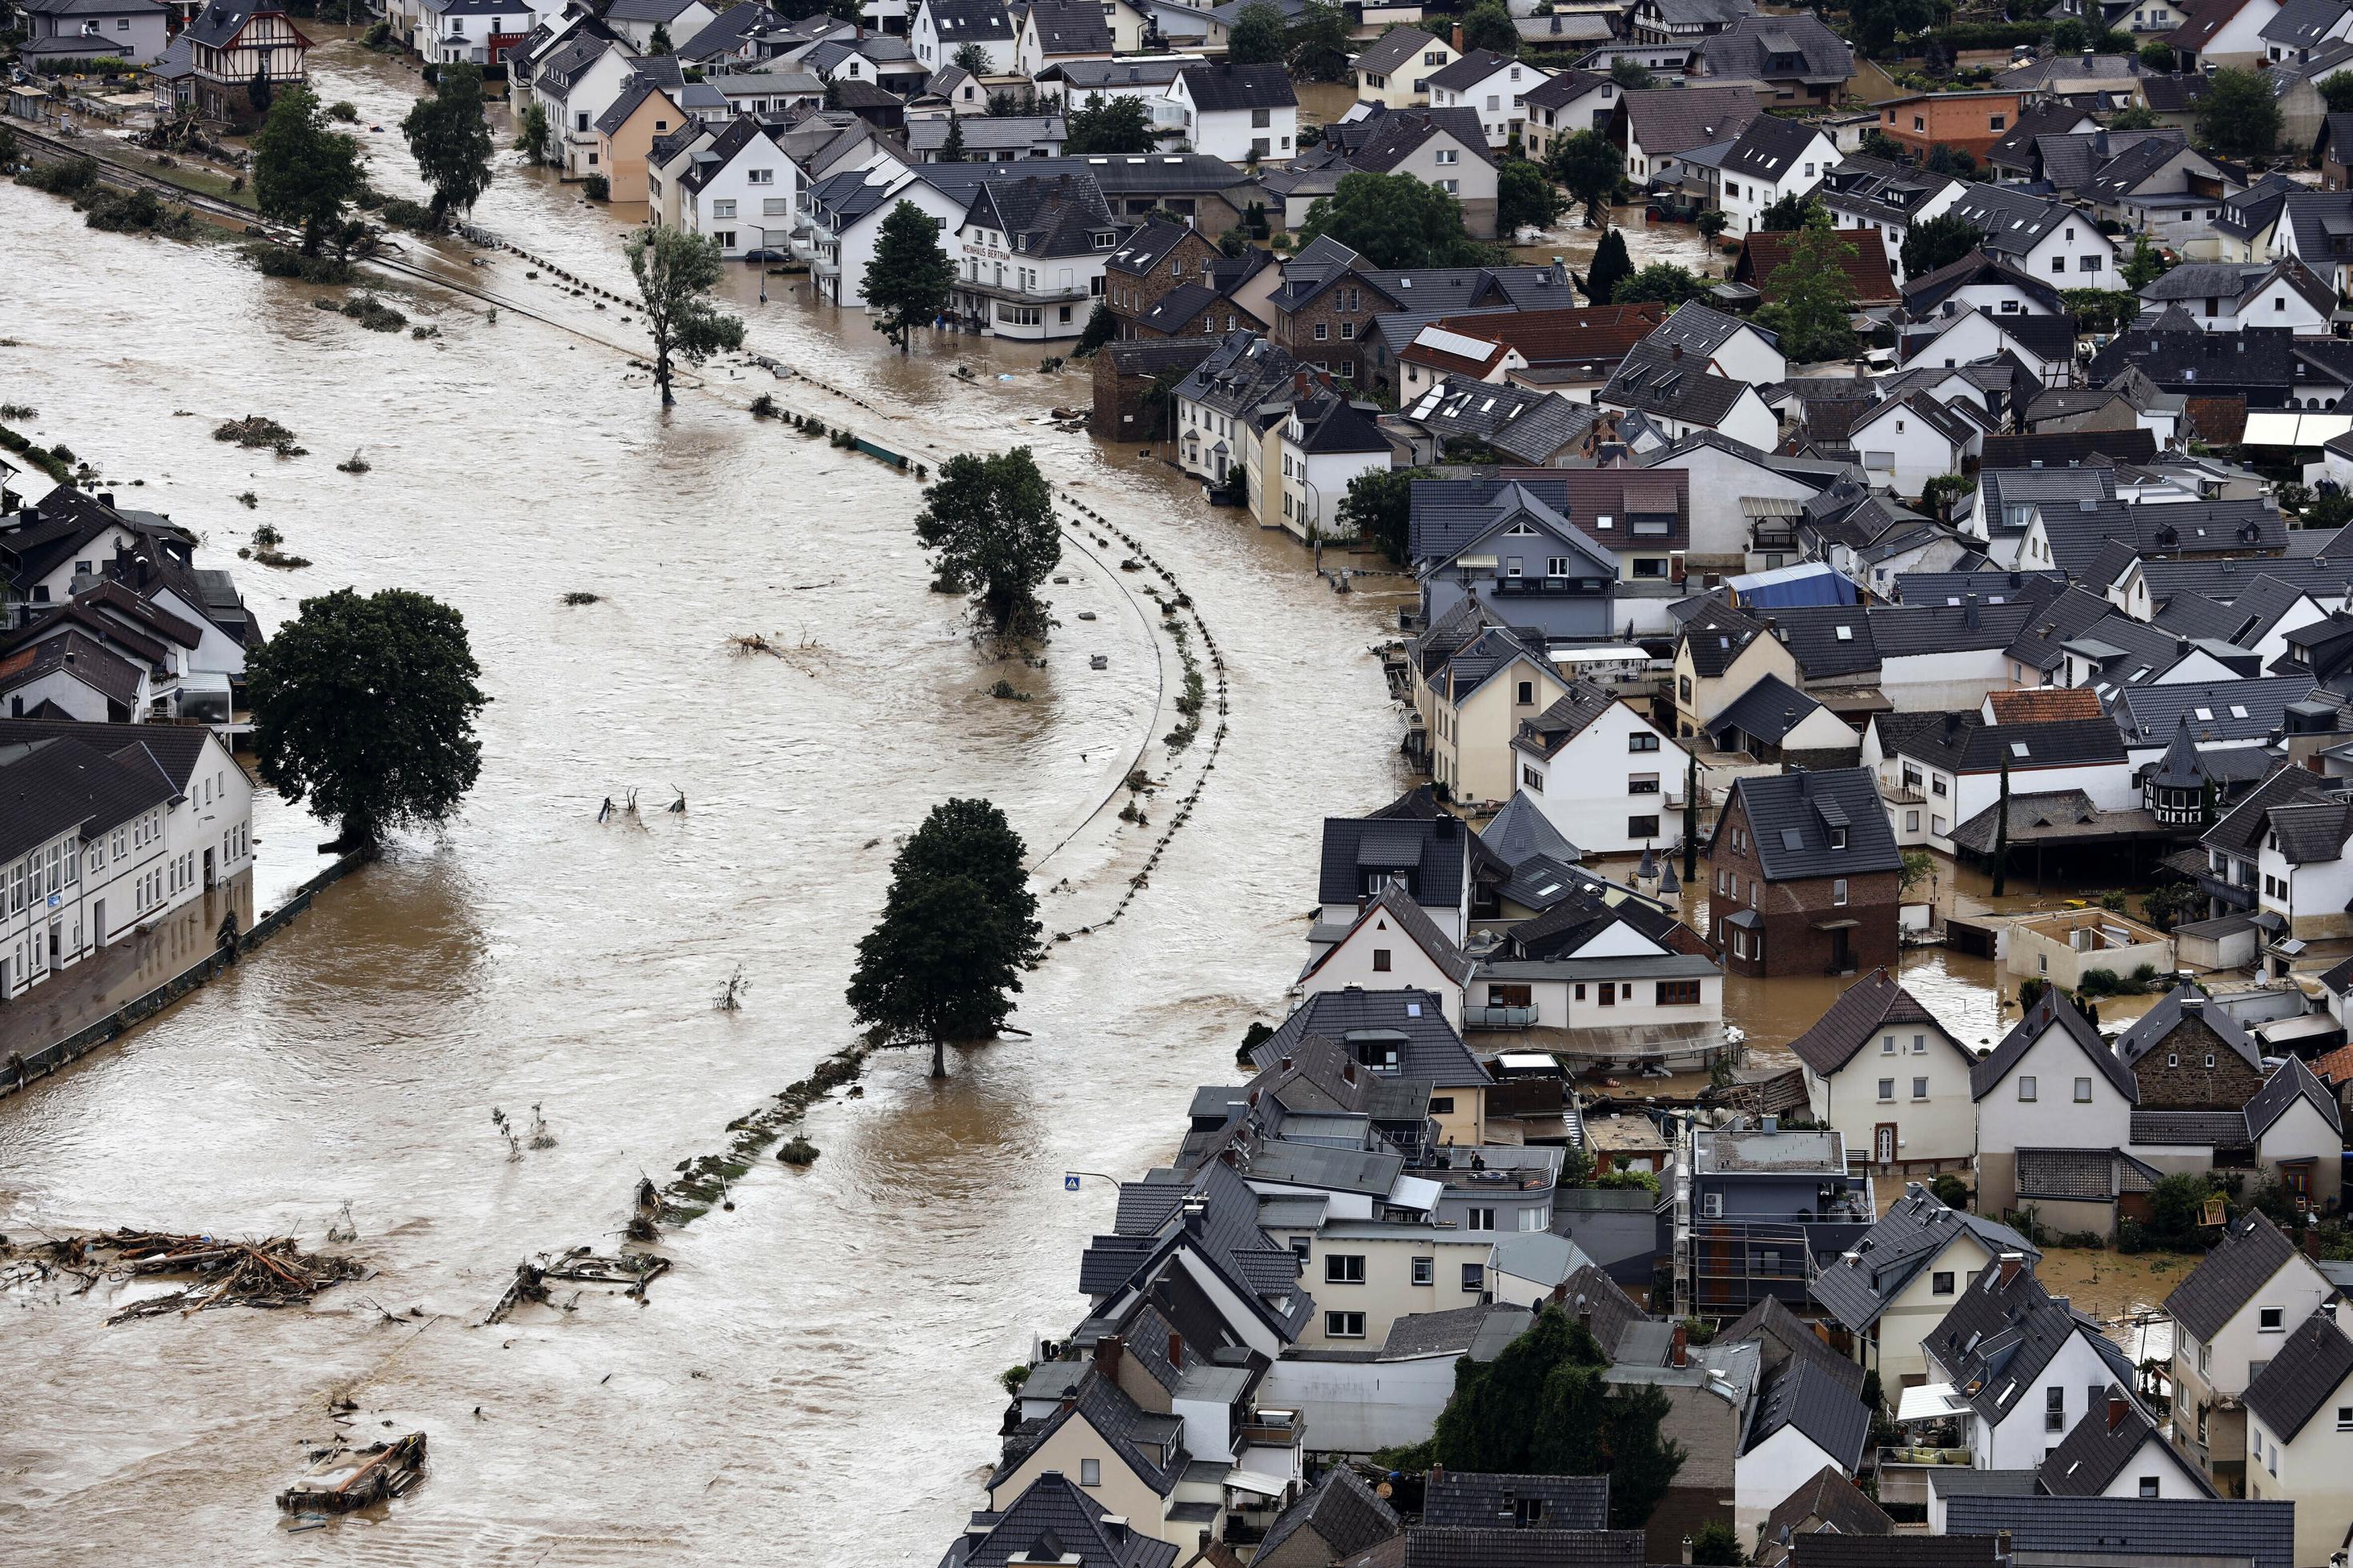 Viele Häuser des Ortes Dernau stehen nach Überflutungen an der Ahr  im Wasser.